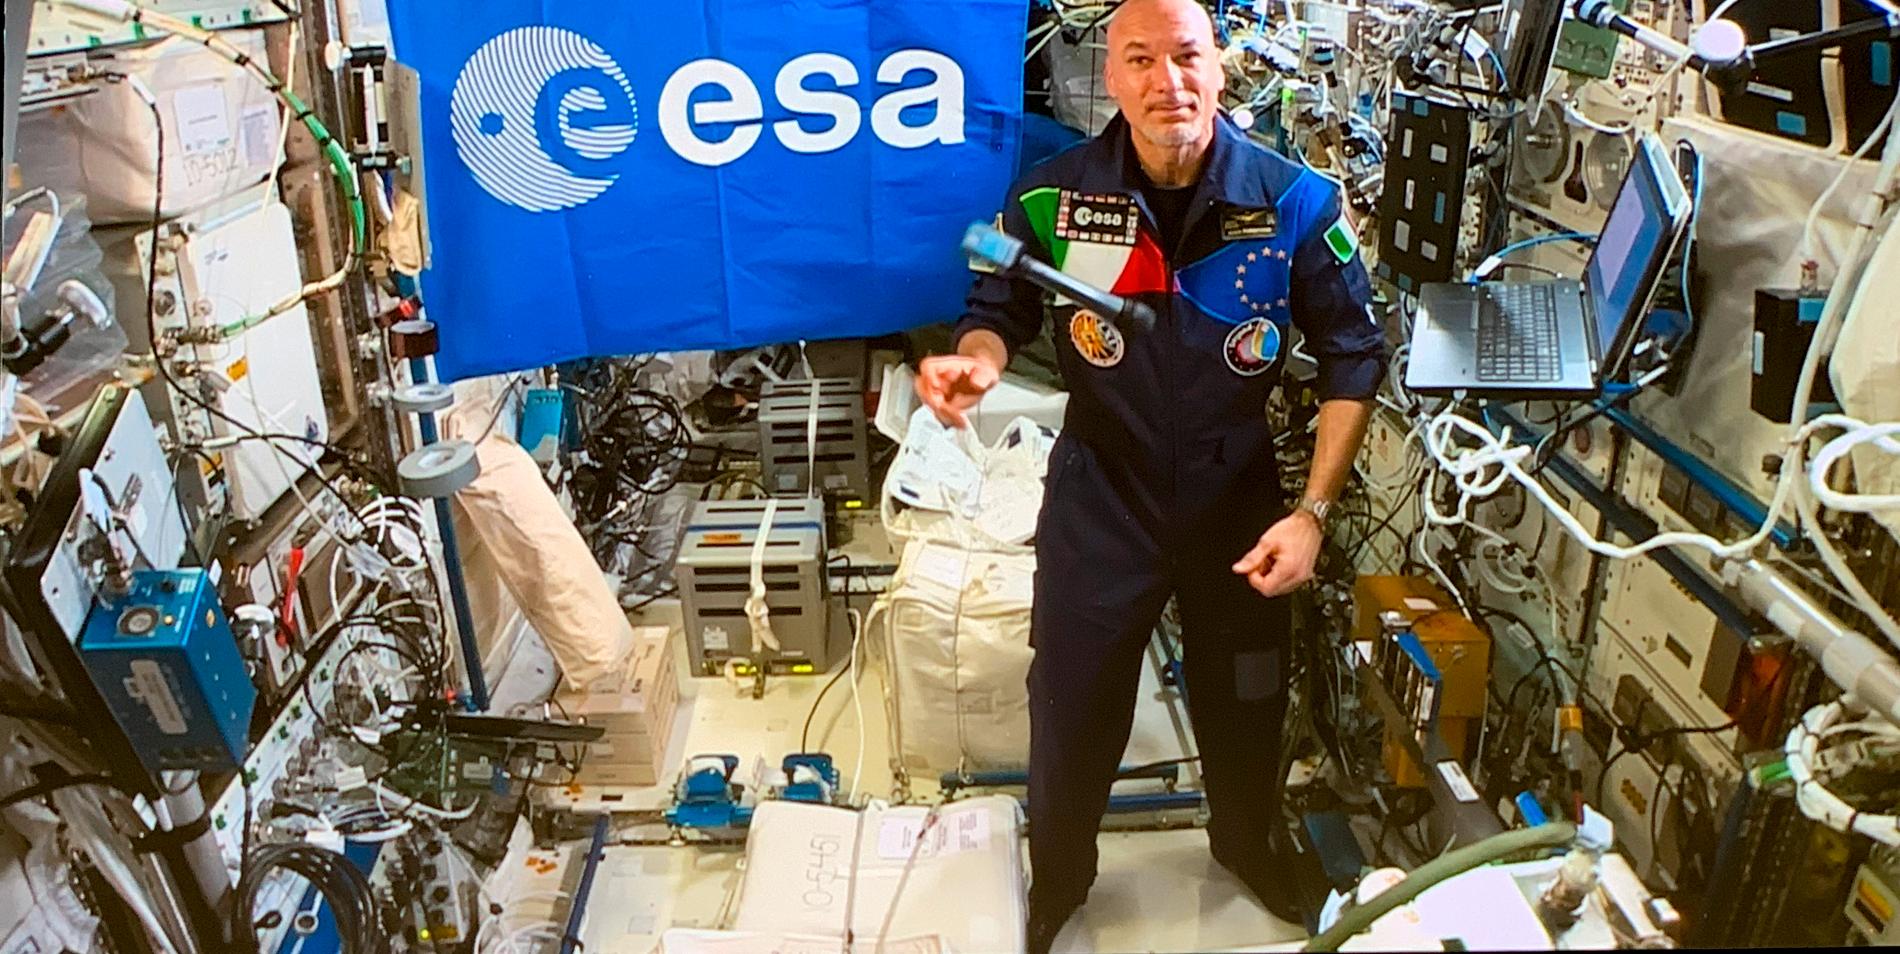 Den spanske astronauten Luca Parmitano ombord på den internationella rymdstationen ISS.